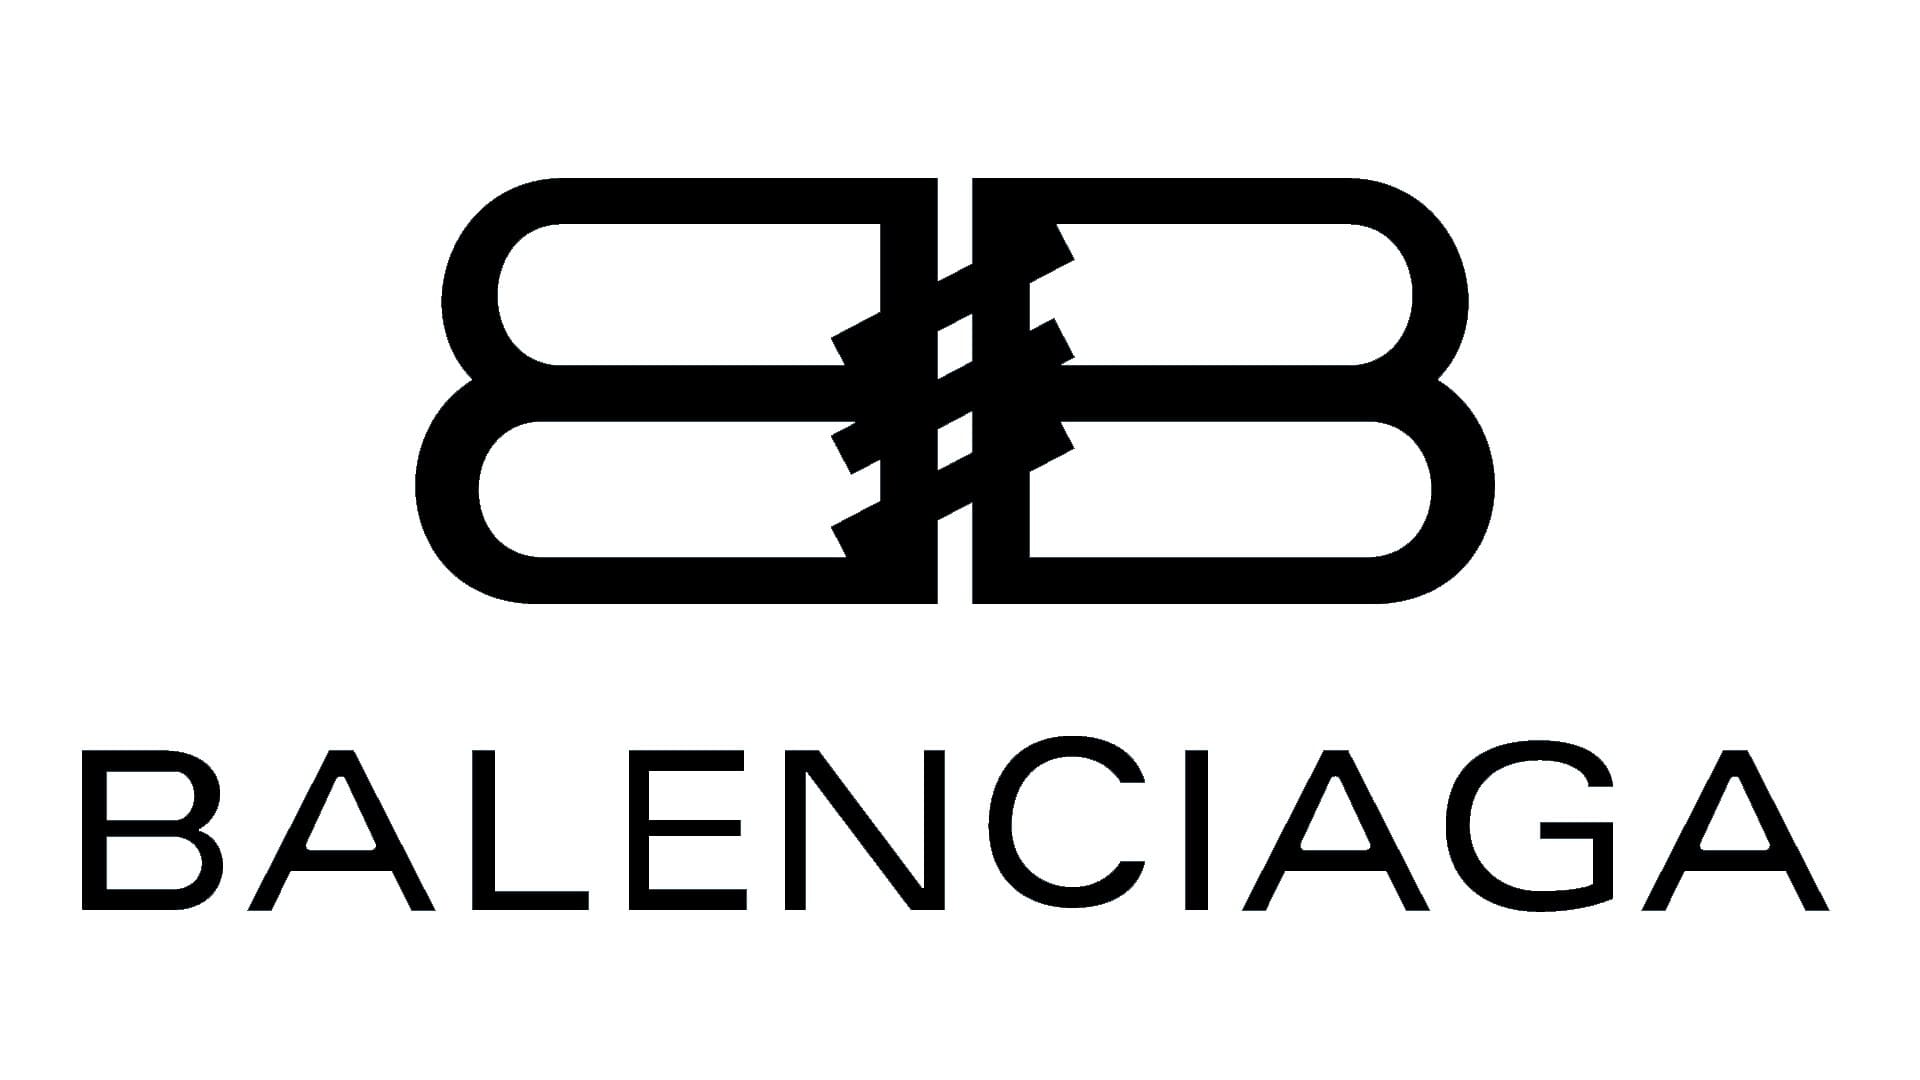 Balenciaga представила новый кампейн, который бы понравился Фэллон Кэррингтон из сериала «Династия» 